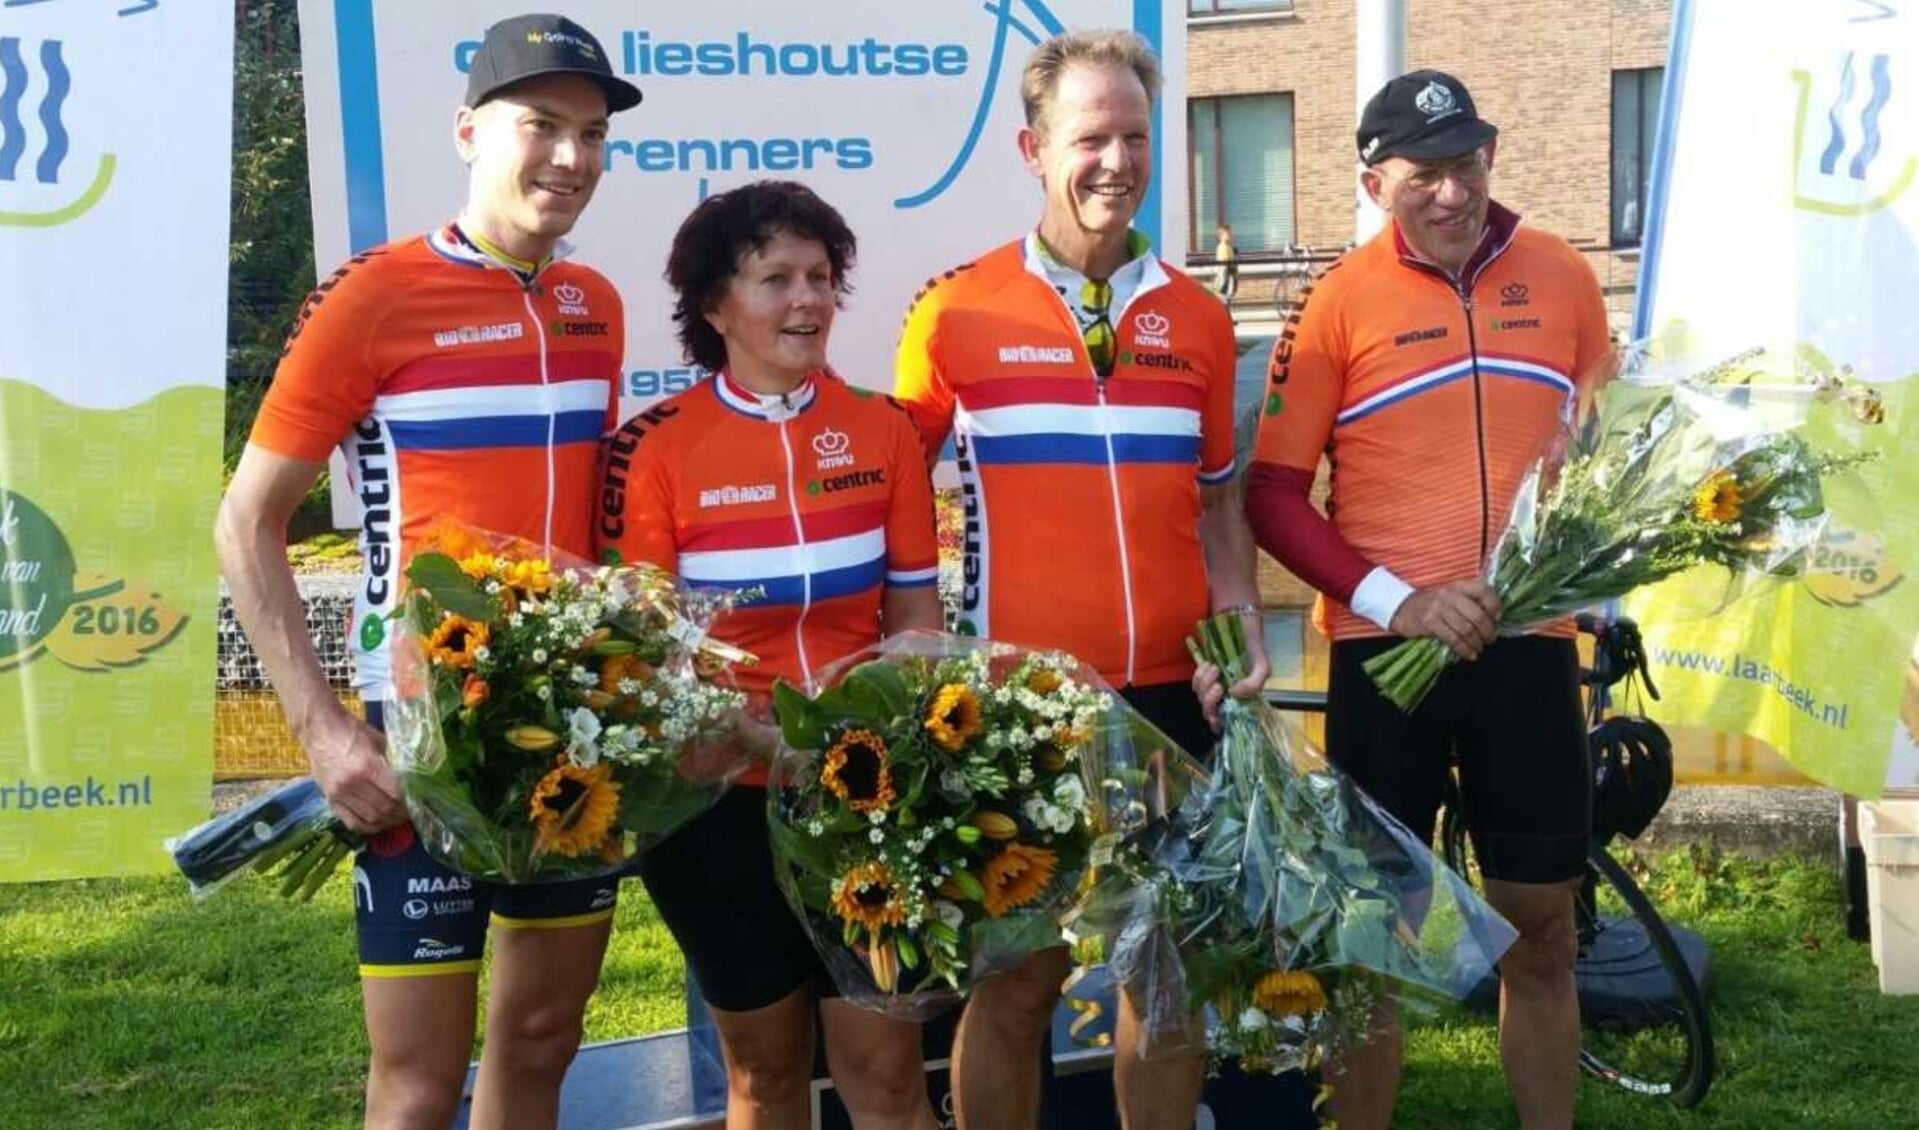 Burgemeester Arie van Erk van Hillegom won het kampioenschap vorig jaar, samen met gemeentesecretaris Jan Schellevis (Lisse). 